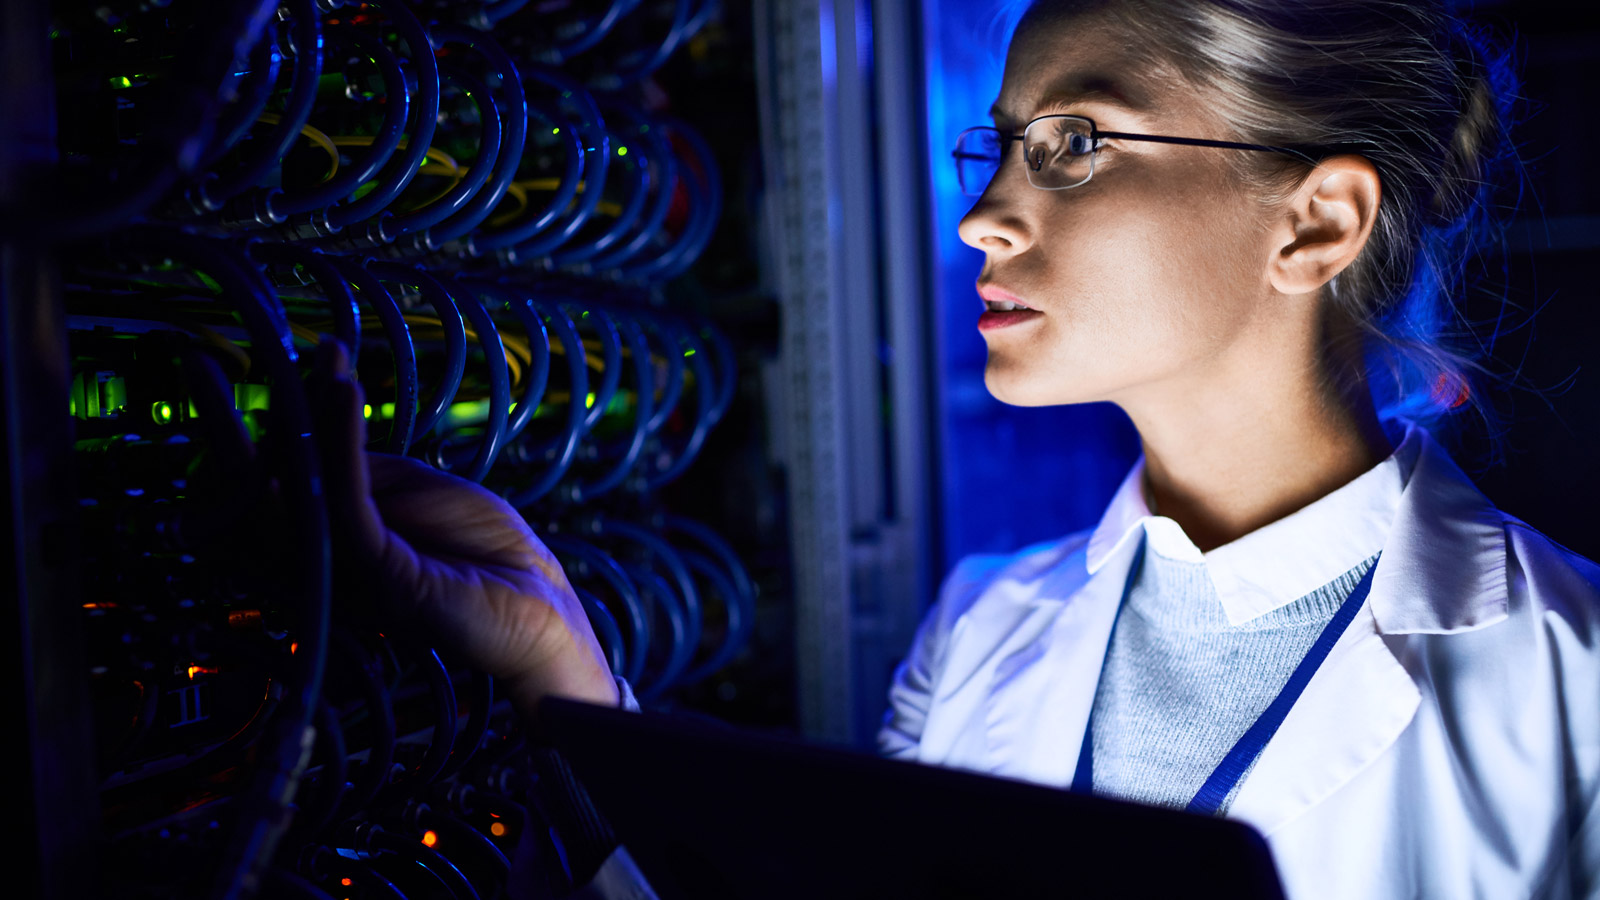 Sztuczna Inteligencja pomoże zatrudnić pracownika IT mediarun kobieta komputer naukowiec technologia 2019